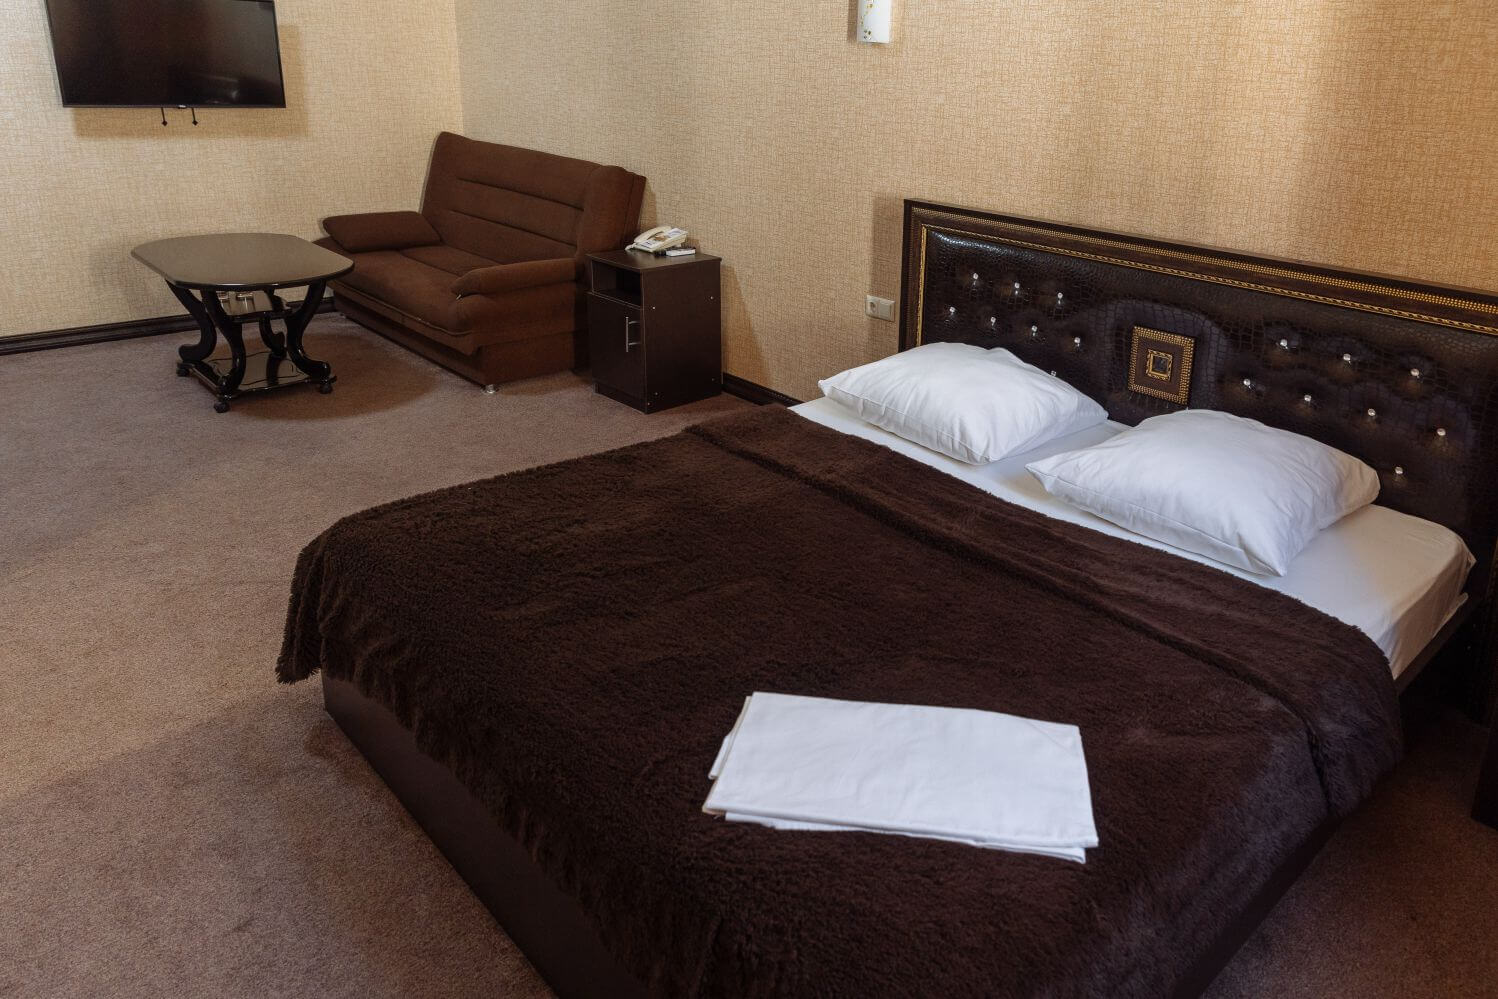 Кровать накрыта коричневым, теплым покрывалом.